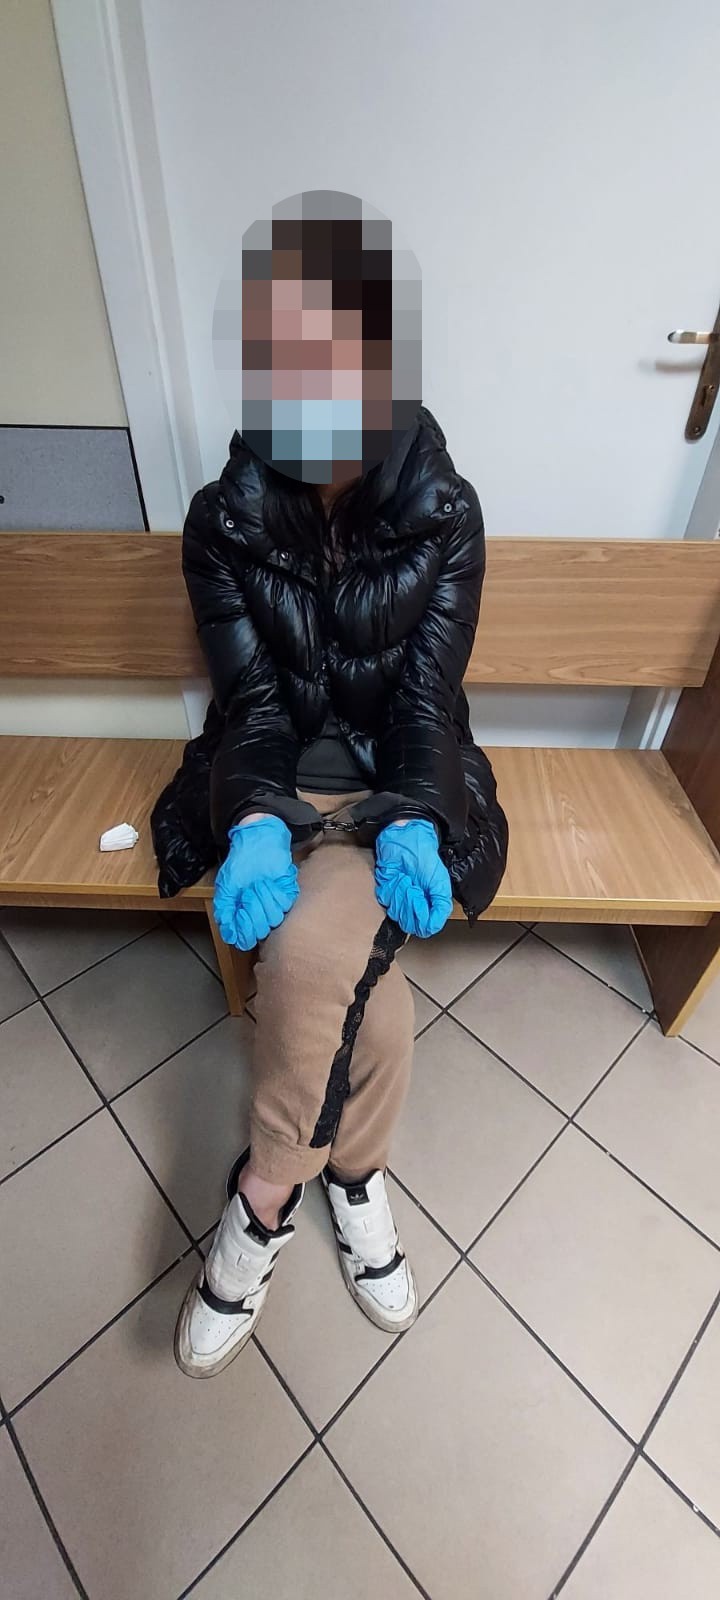 33-letnia mieszkanka gminy Kłaj groziła siostrze nożem i...